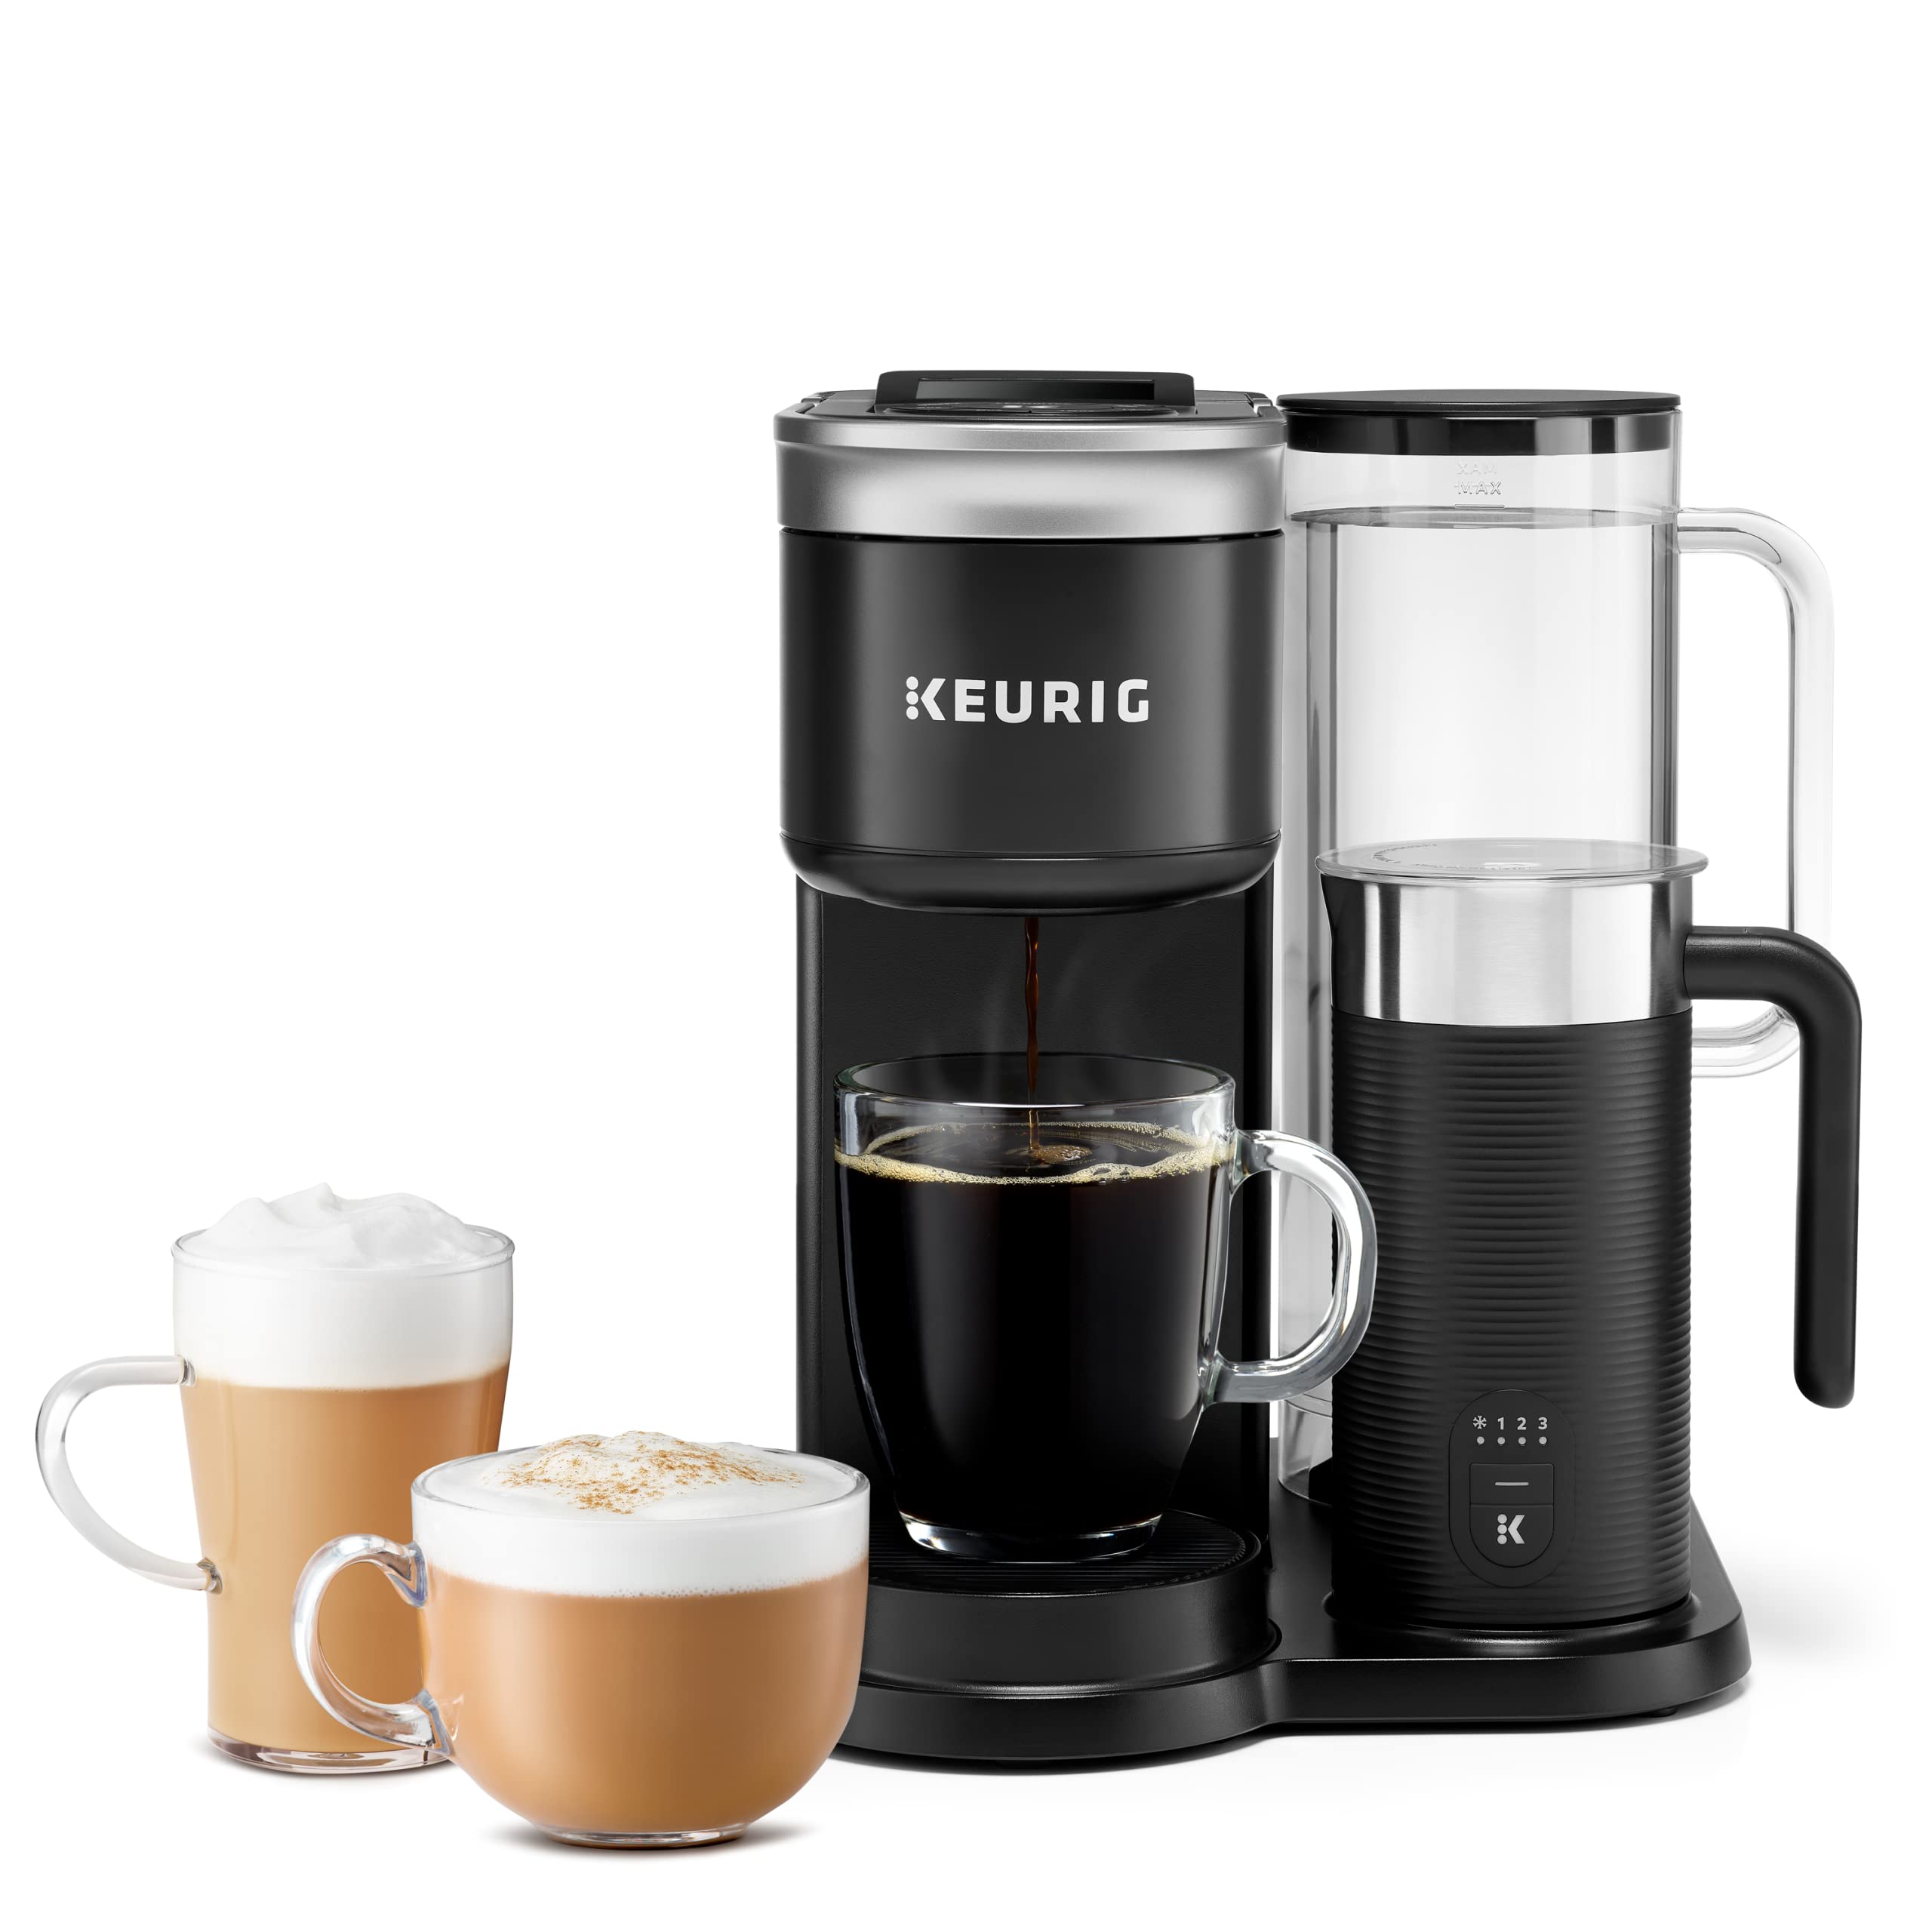 Keurig K-Duo シングルサーブ K カップ ポッド コーヒー、ラテ、カプチーノ メーカー...